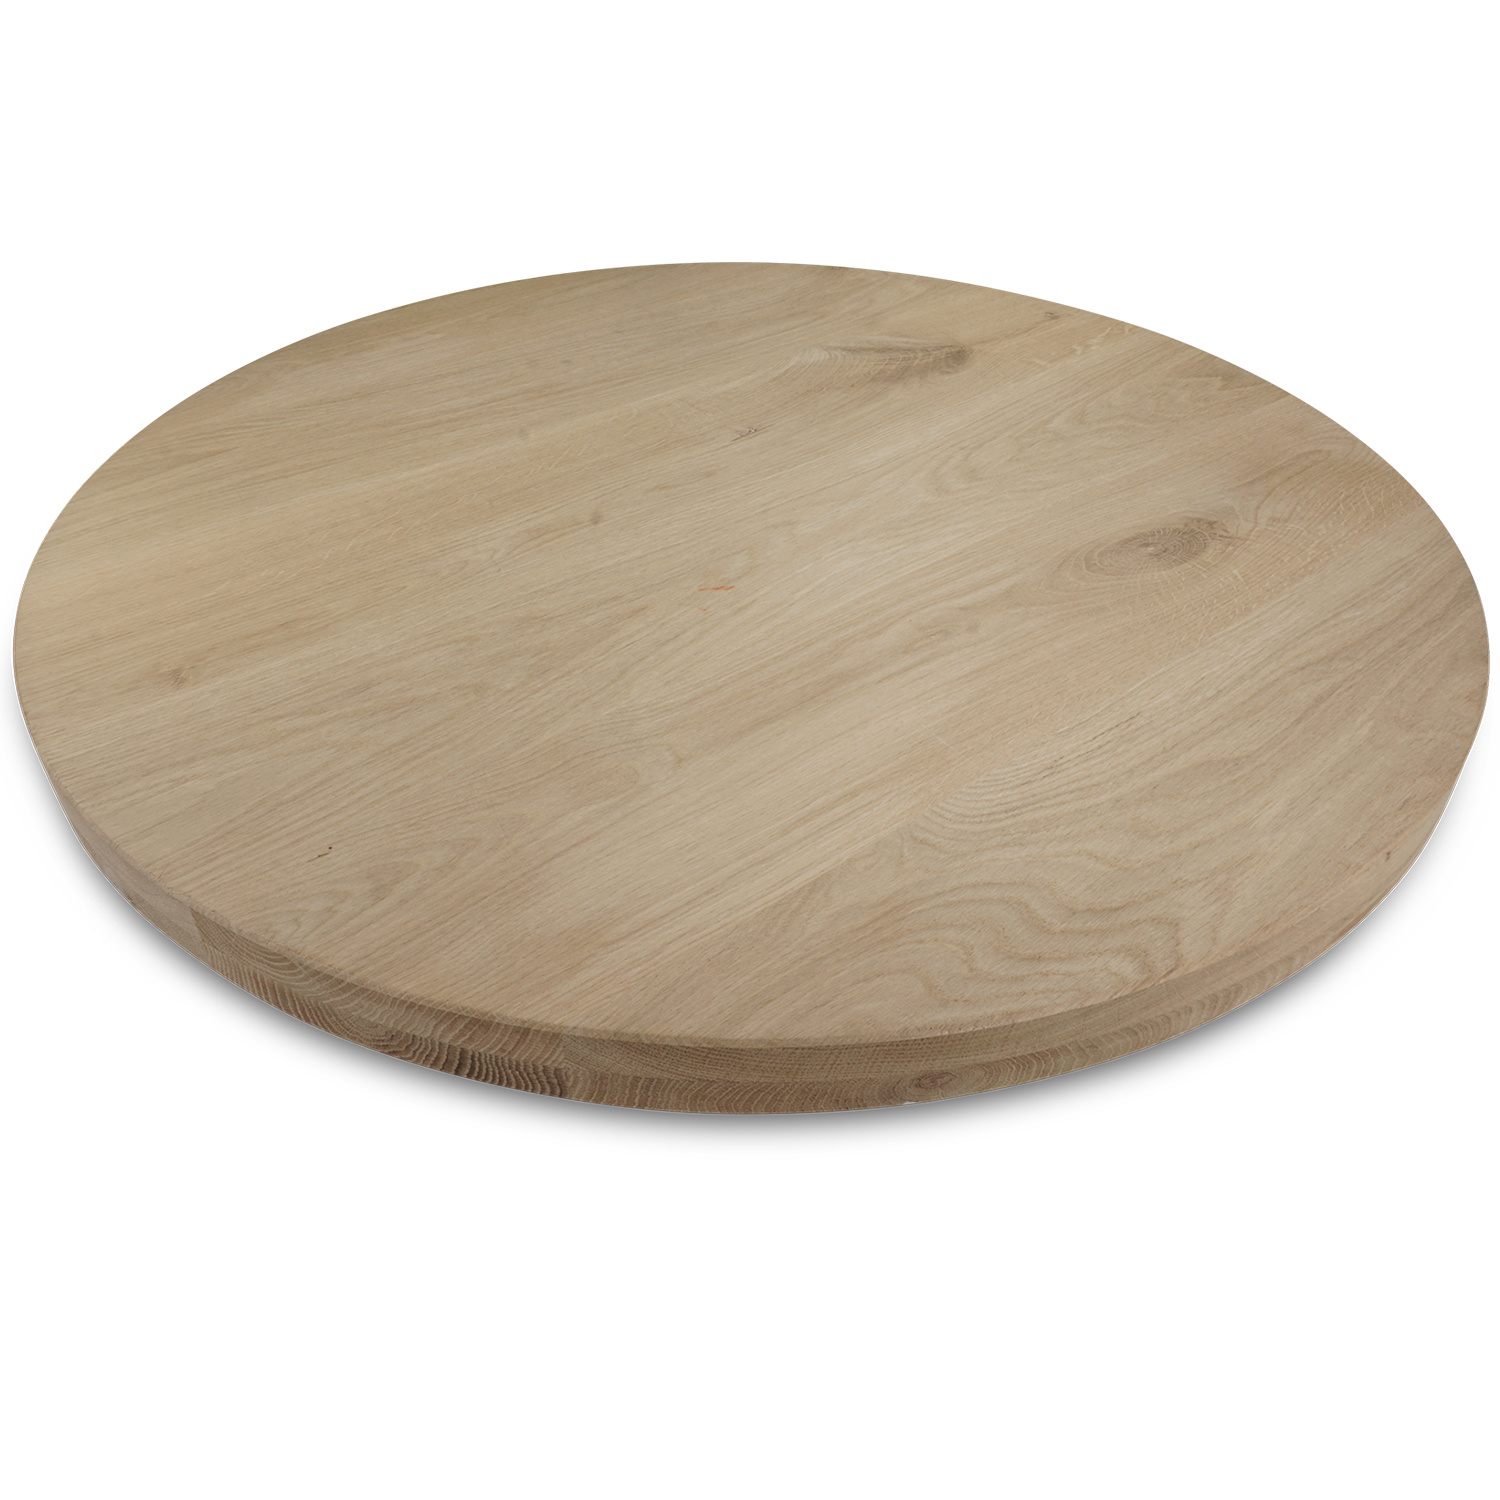  Tischplatte Eiche rund nach Maß - 5 cm dick (2-lagig) - Eichenholz A-Qualität - Durchmesser: 30 - 180 cm - Eiche Tischplatte rund massiv - verleimt & künstlich getrocknet (HF 8-12%)